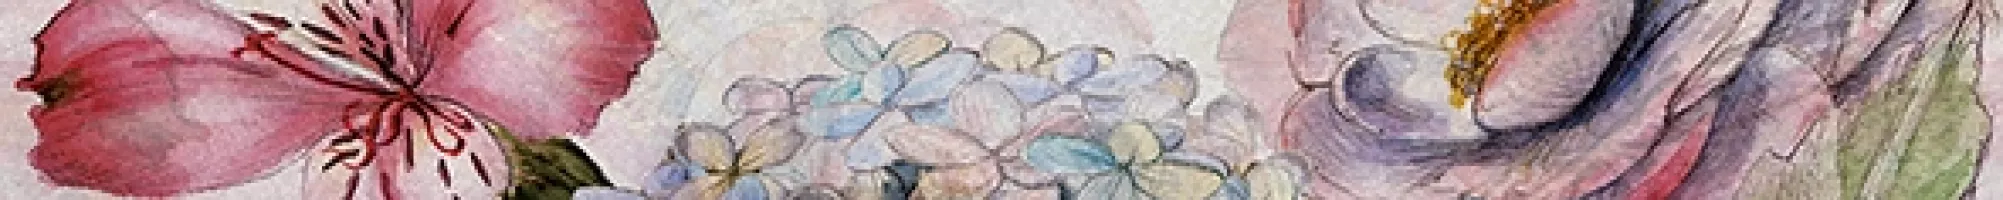 Плитка настенная Ceradim 50x5 бордюр Mold Rocio глянцевая глазурованная